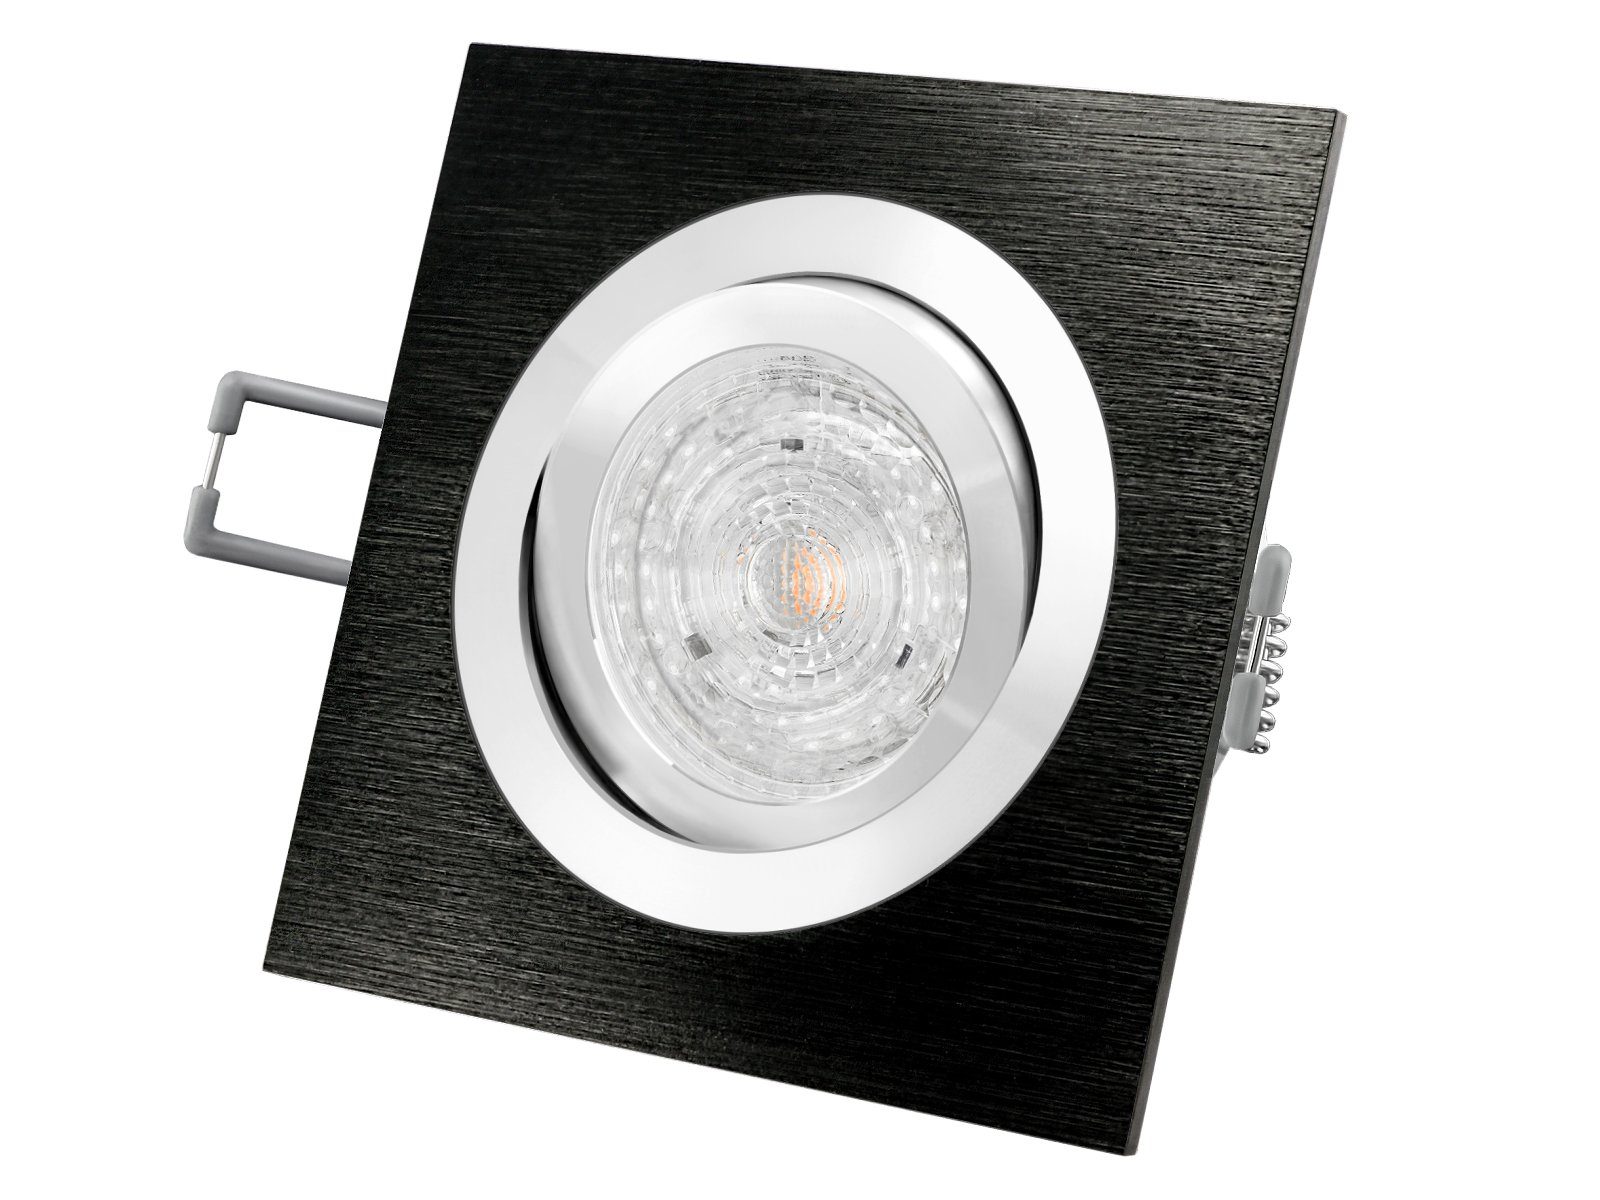 SSC-LUXon LED Einbaustrahler QF-2 LED-Einbauleuchte Spot Alu schwarz schwenkbar, 4,9W neutralweiss, Neutralweiß | Strahler